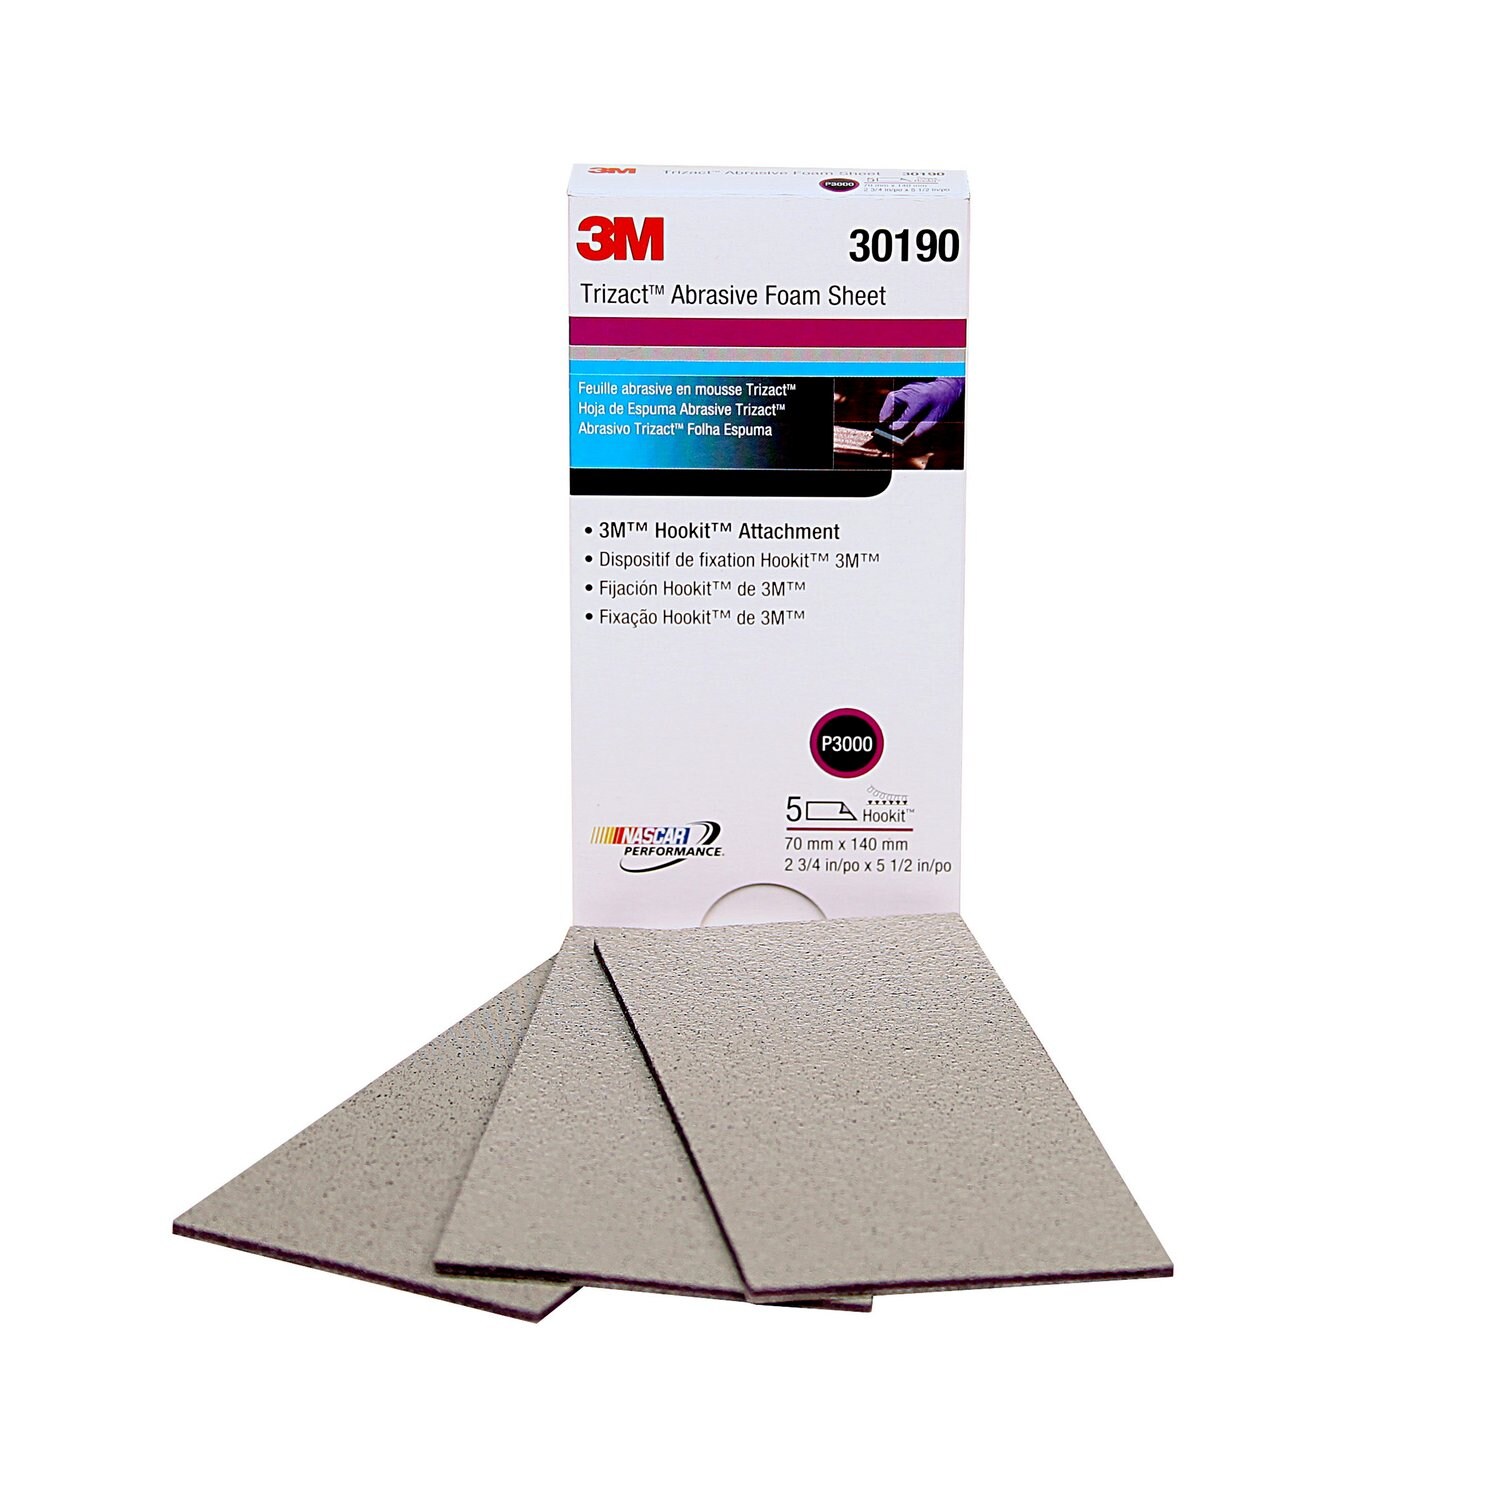 7100072763 - 3M Trizact Hookit Foam Sheet, 30190, 2 3/4 in x 5 1/2 in (70 mm x 140
mm), 3000 grade, 5 sheets per pack, 10 packs per case